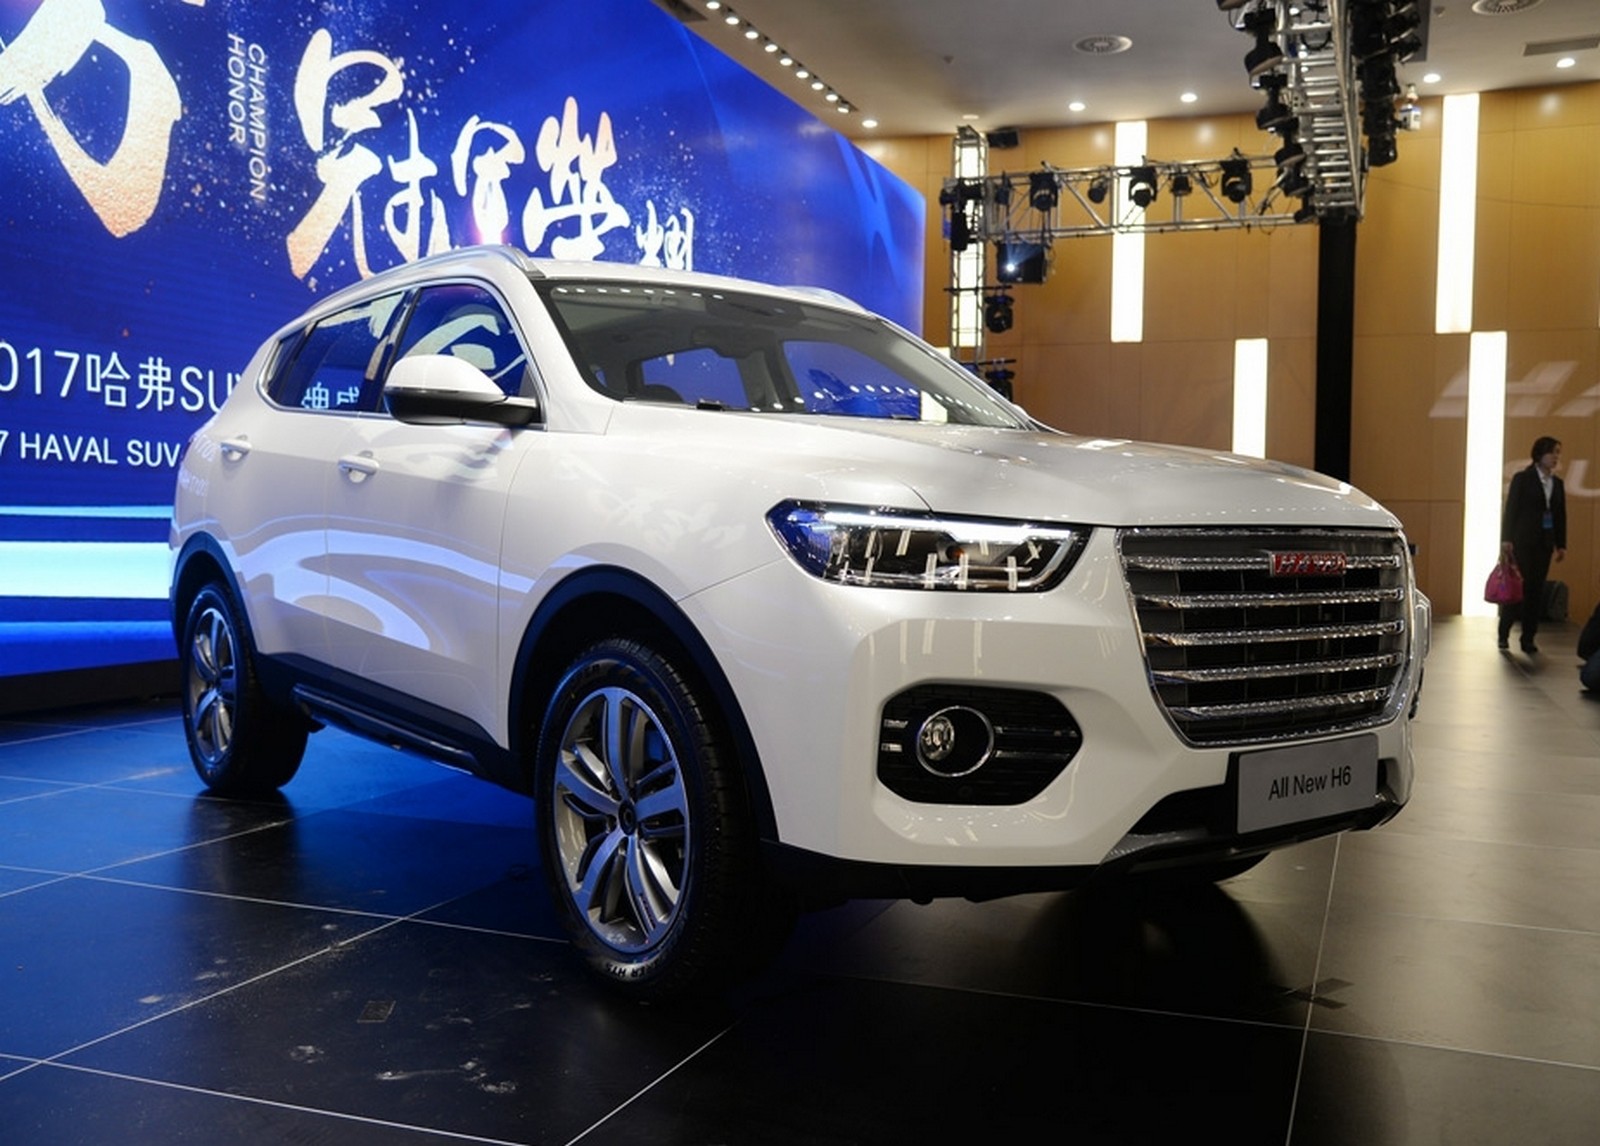 Китайские автомобили форум: Форум "Китайские автомобили" - Главная